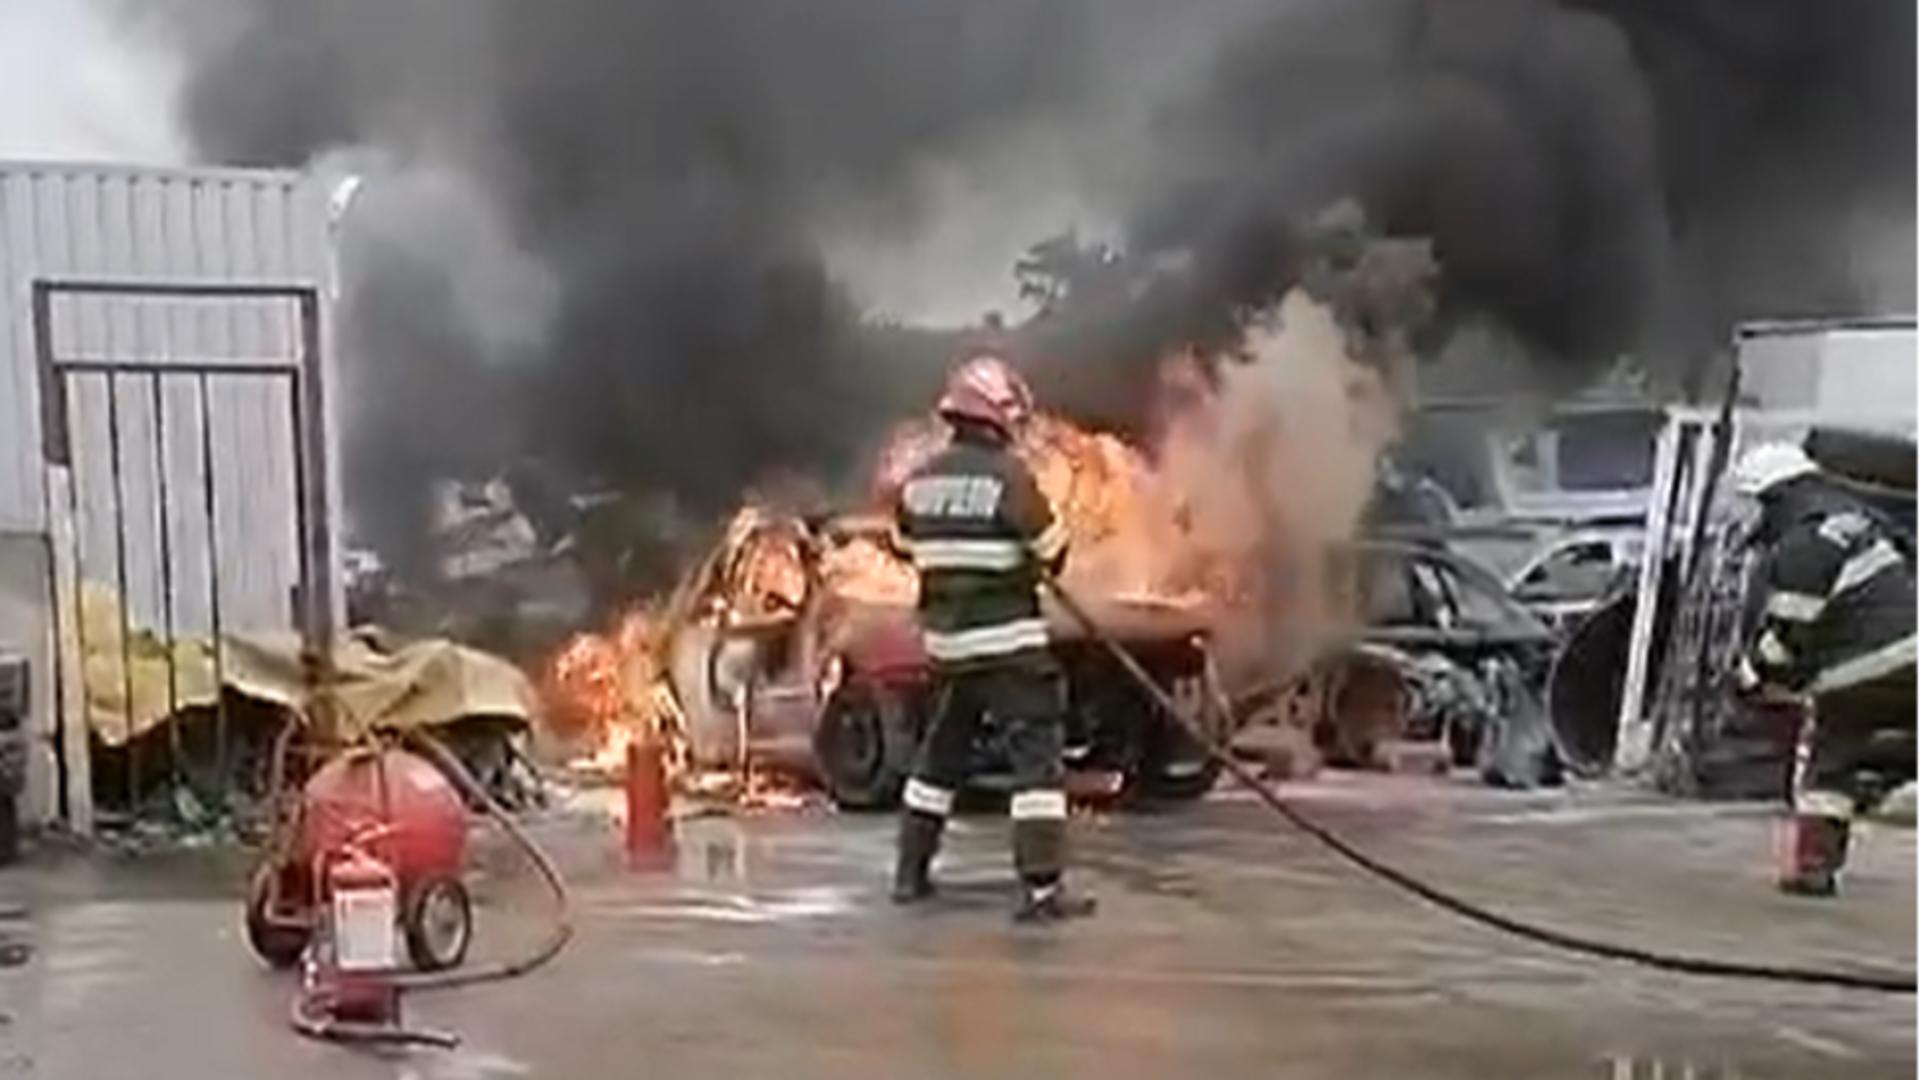 Maşină mistuită de flăcări în curtea unei societăţi comerciale din Arad. De la ce a pornit incendiul